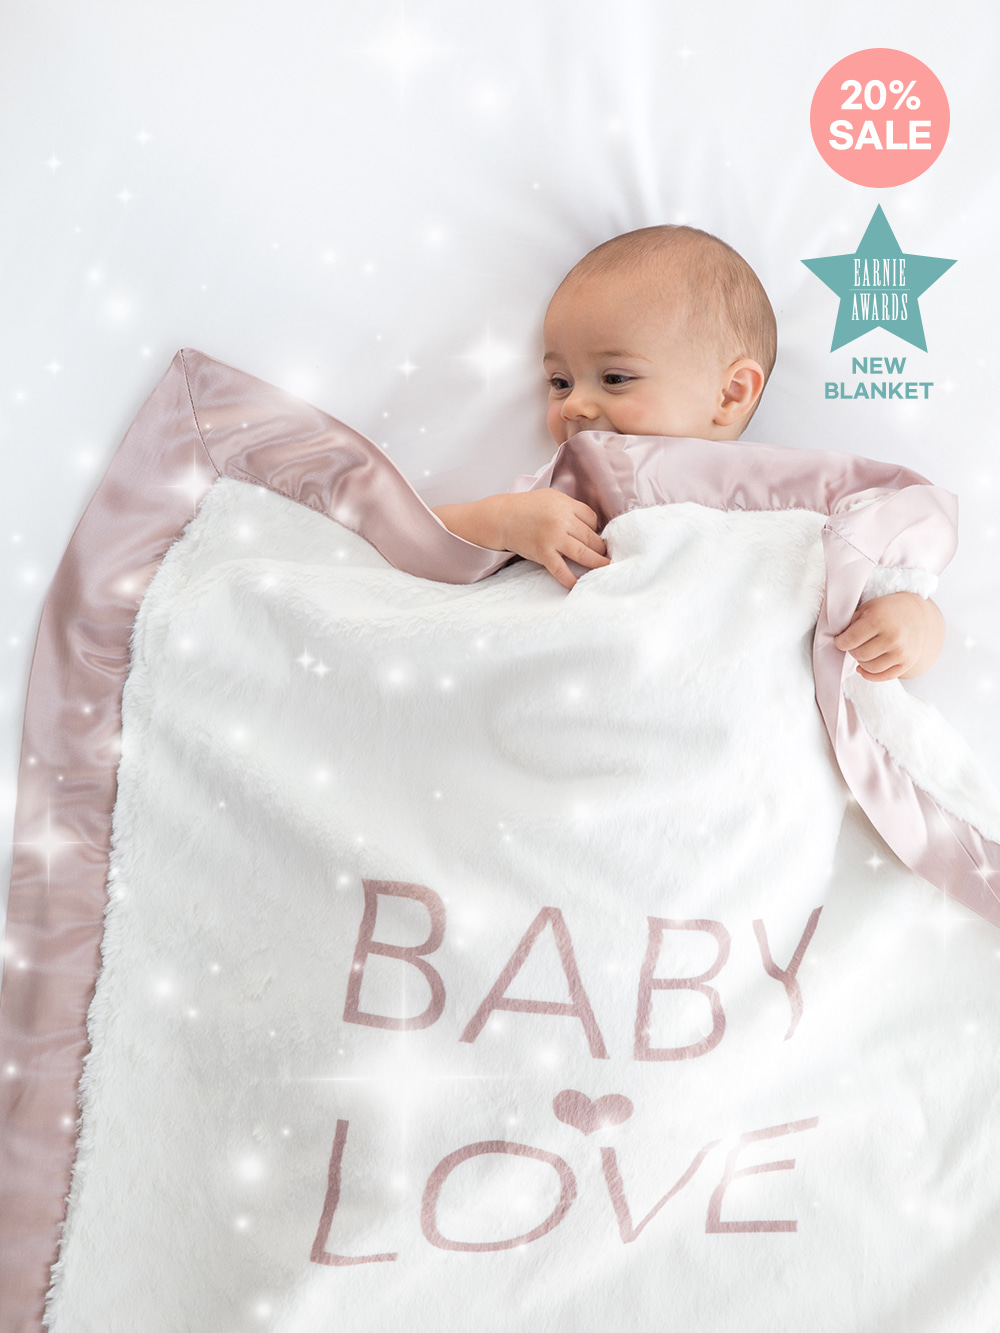 Luxe™ Baby Love Blanket